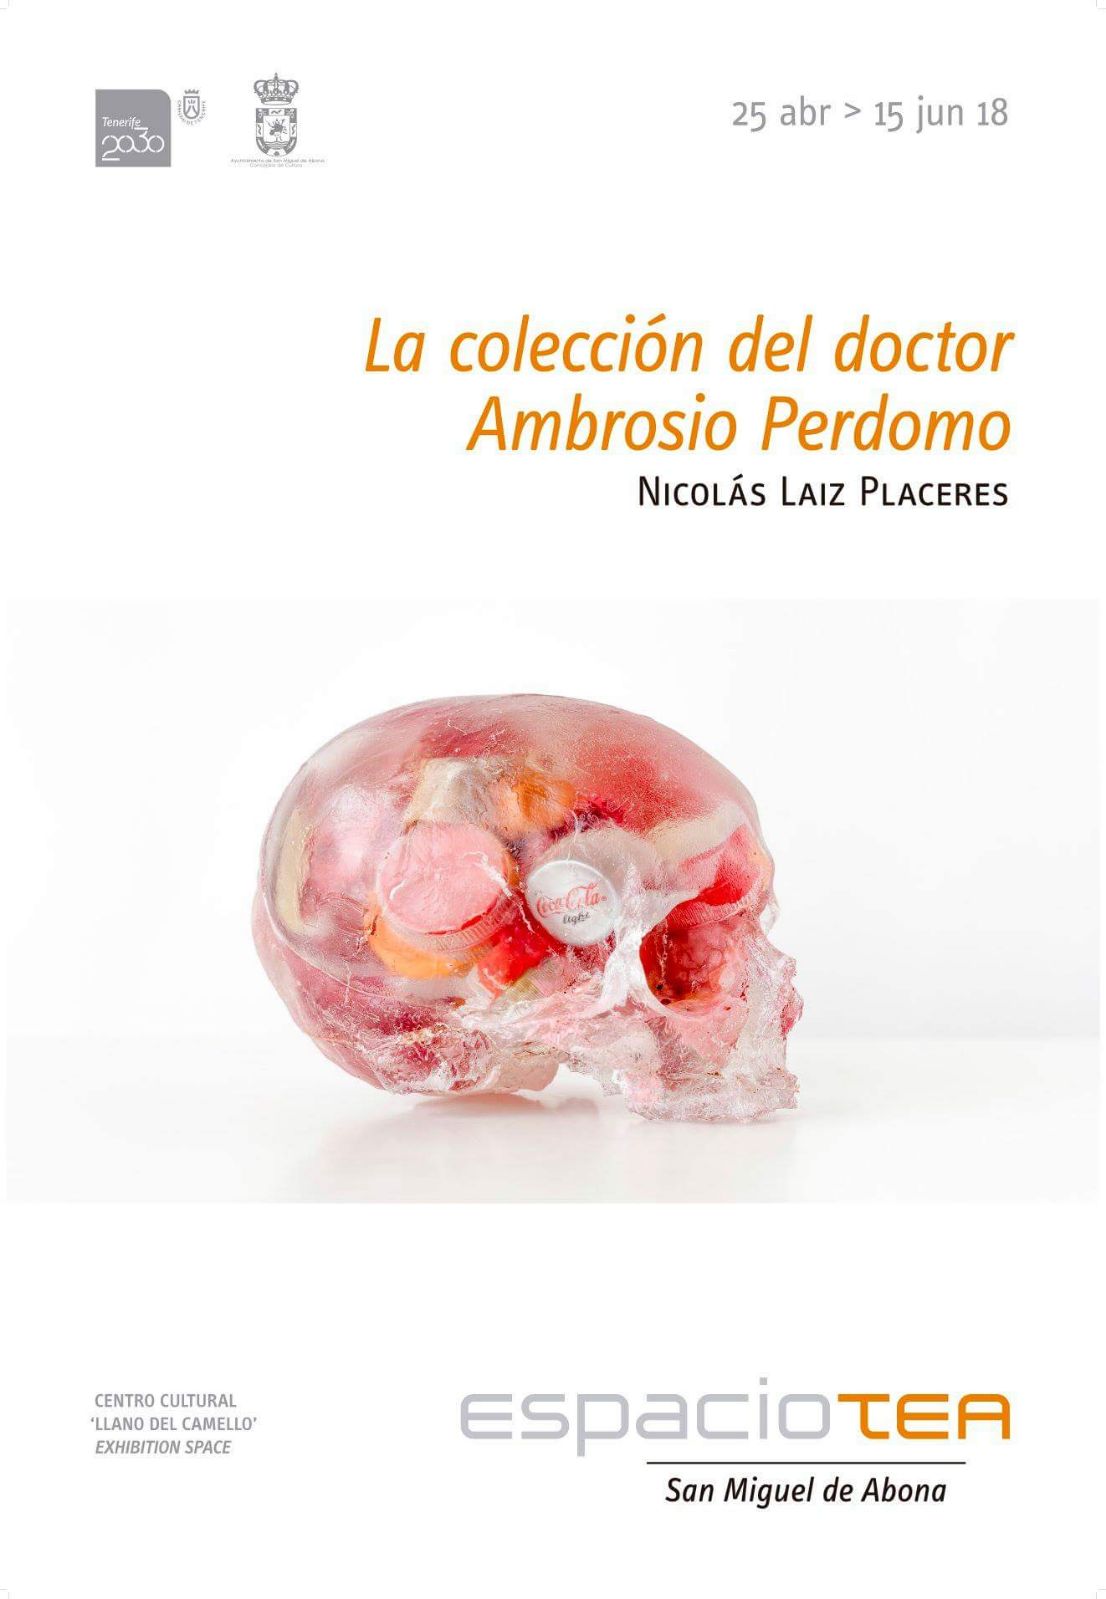 Espacio TEA San Miguel presenta “La colección del doctor Ambrosio Betancor Perdomo” de Nicolás Laiz Placeres